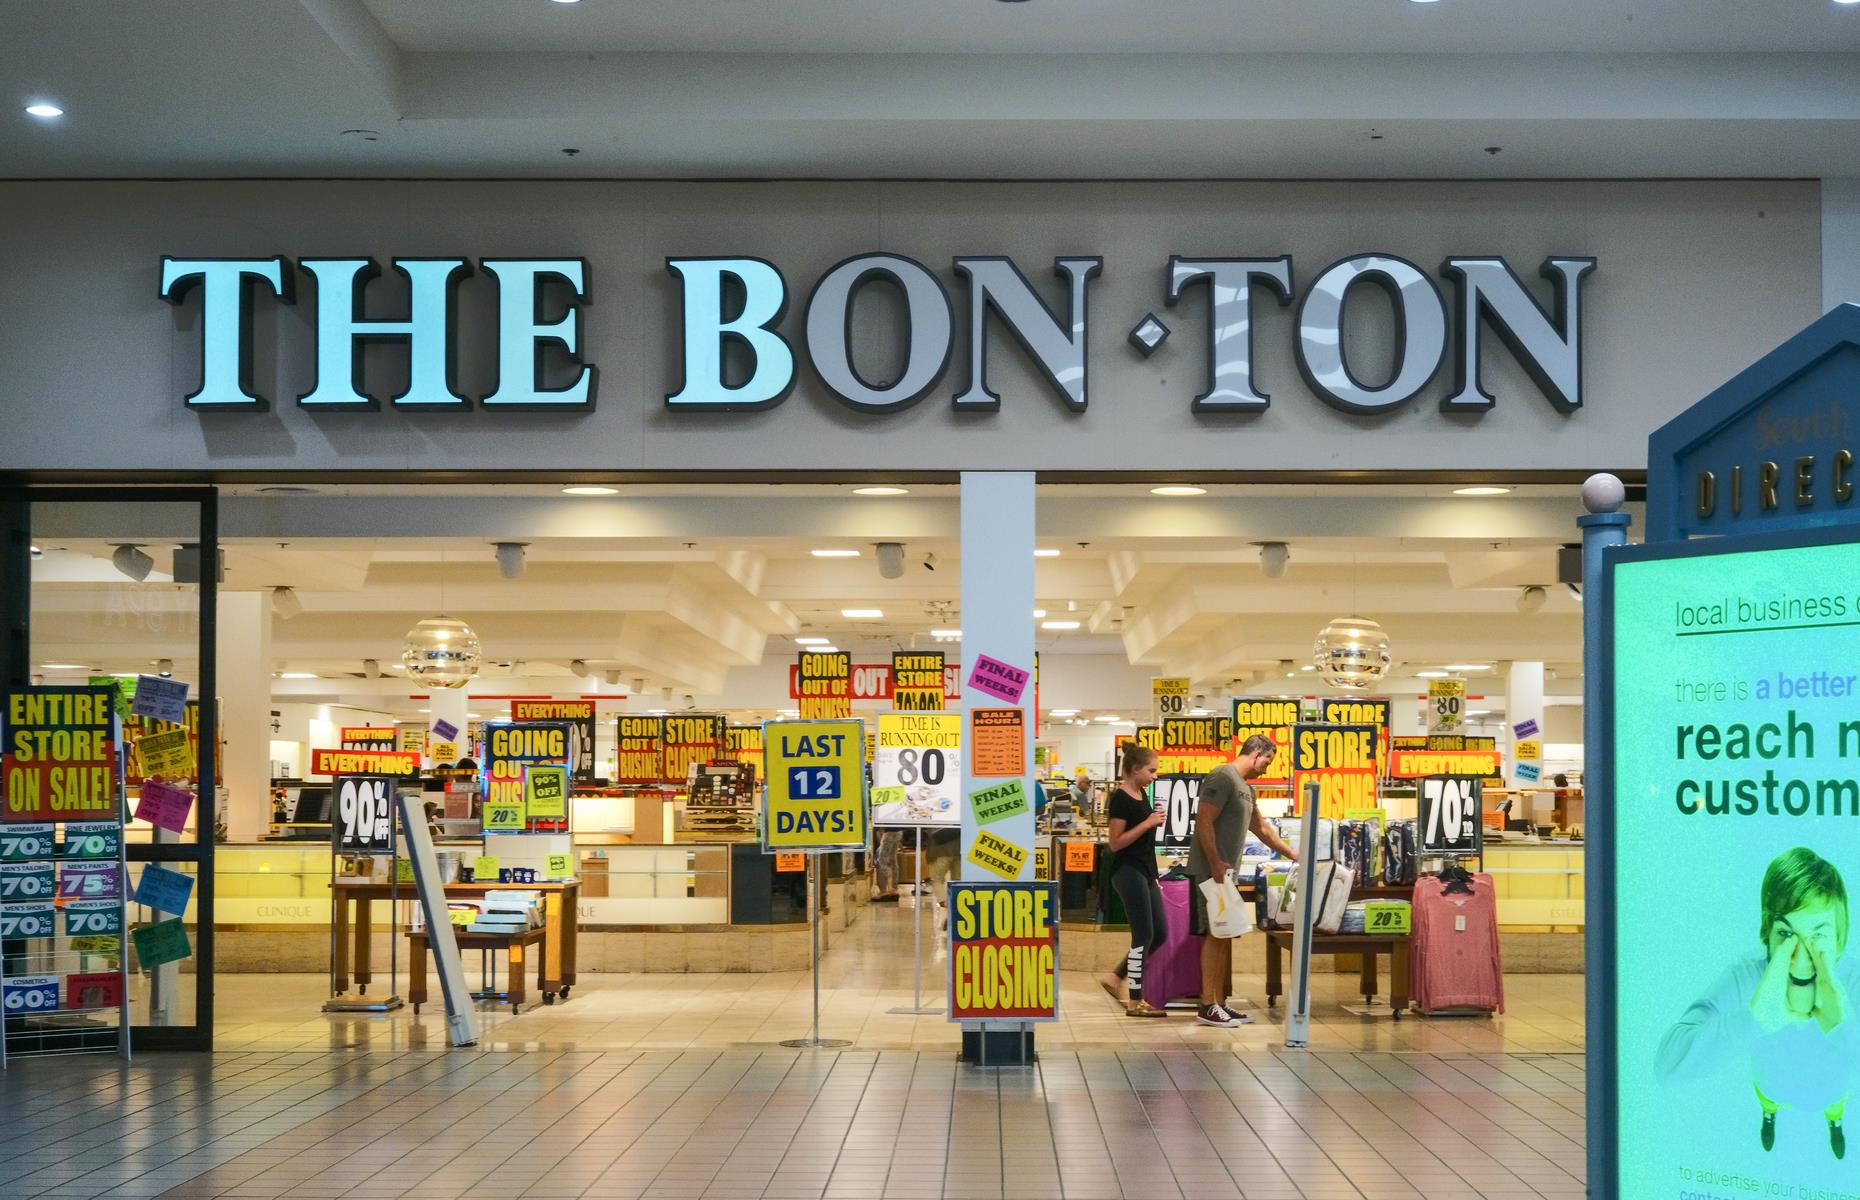 The Bon-Ton